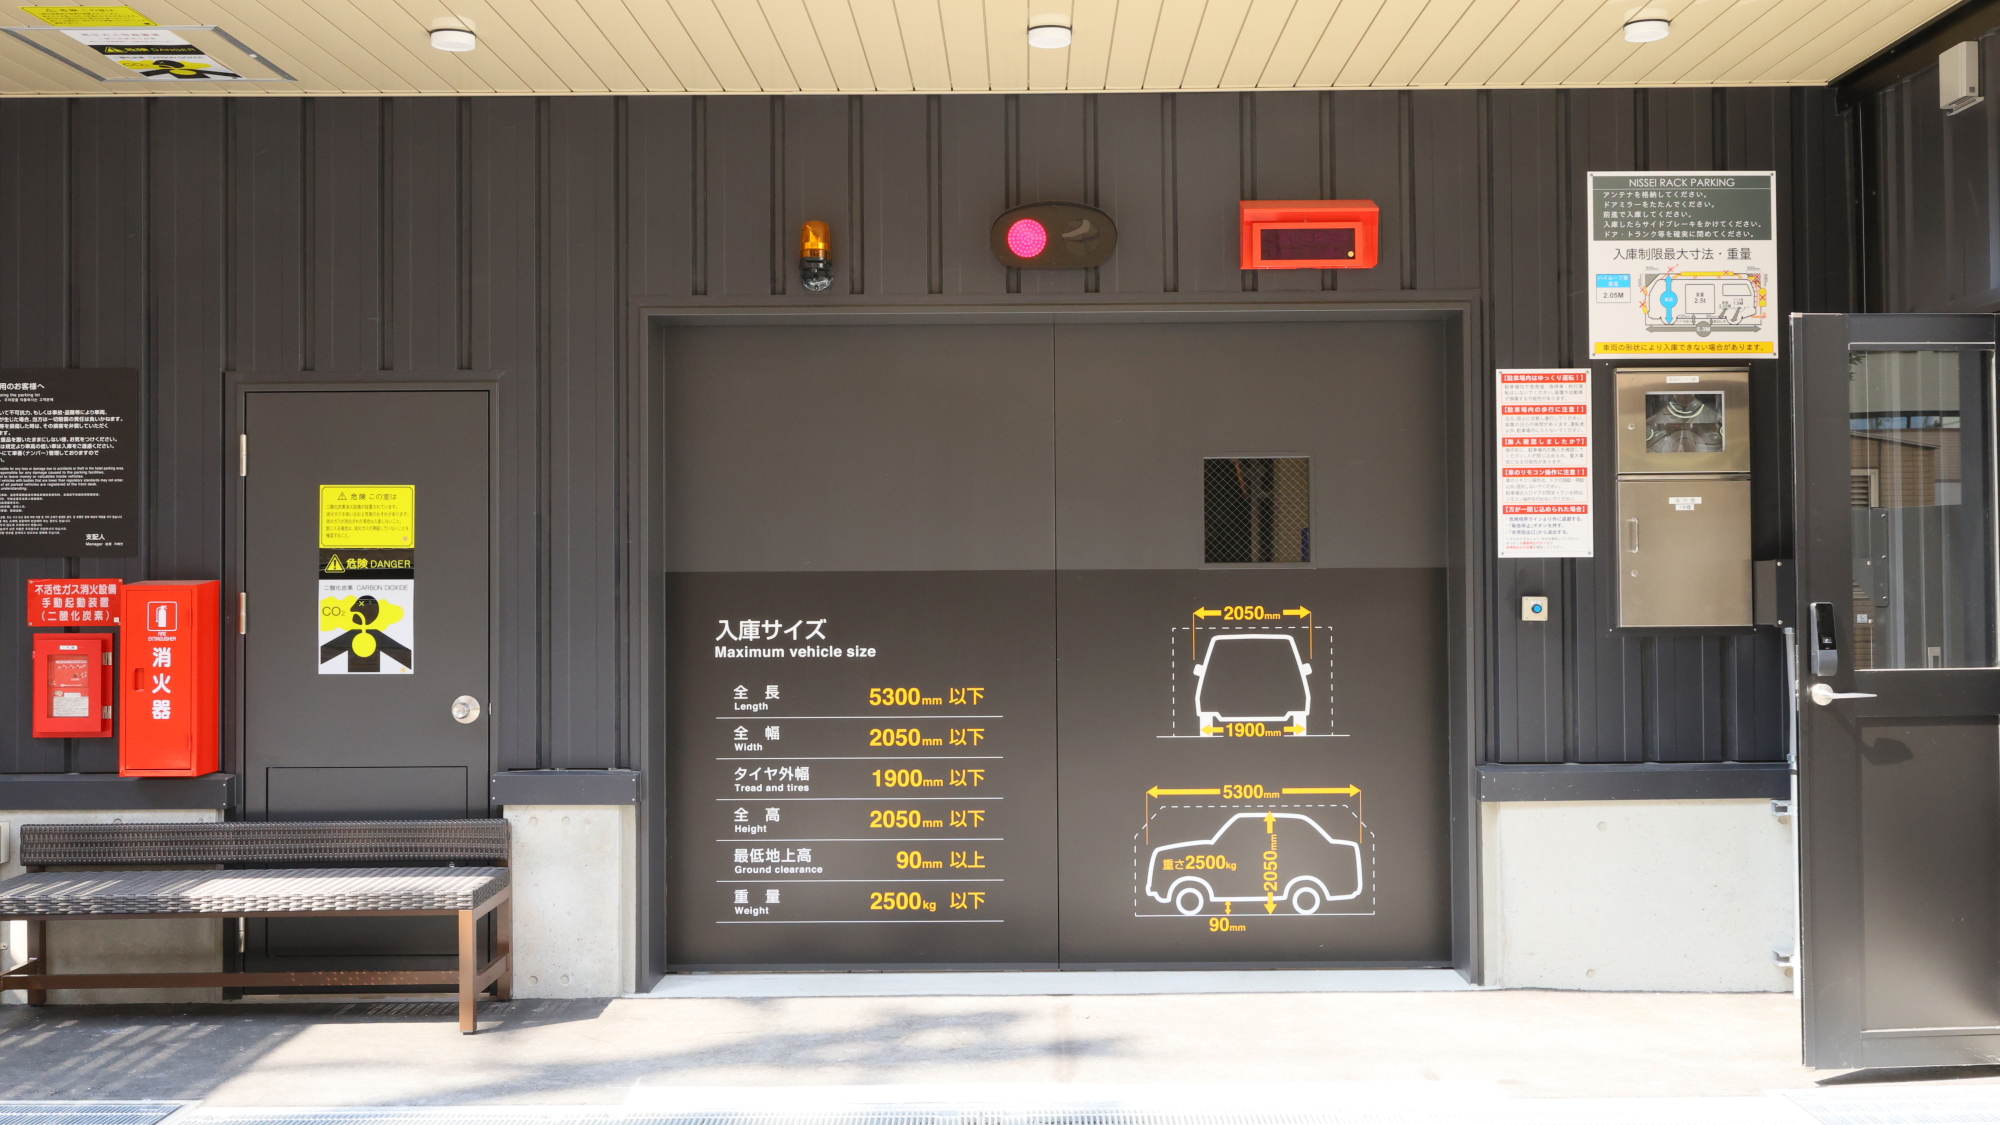 ◆72台入庫可能の機械式駐車場！1000円/泊